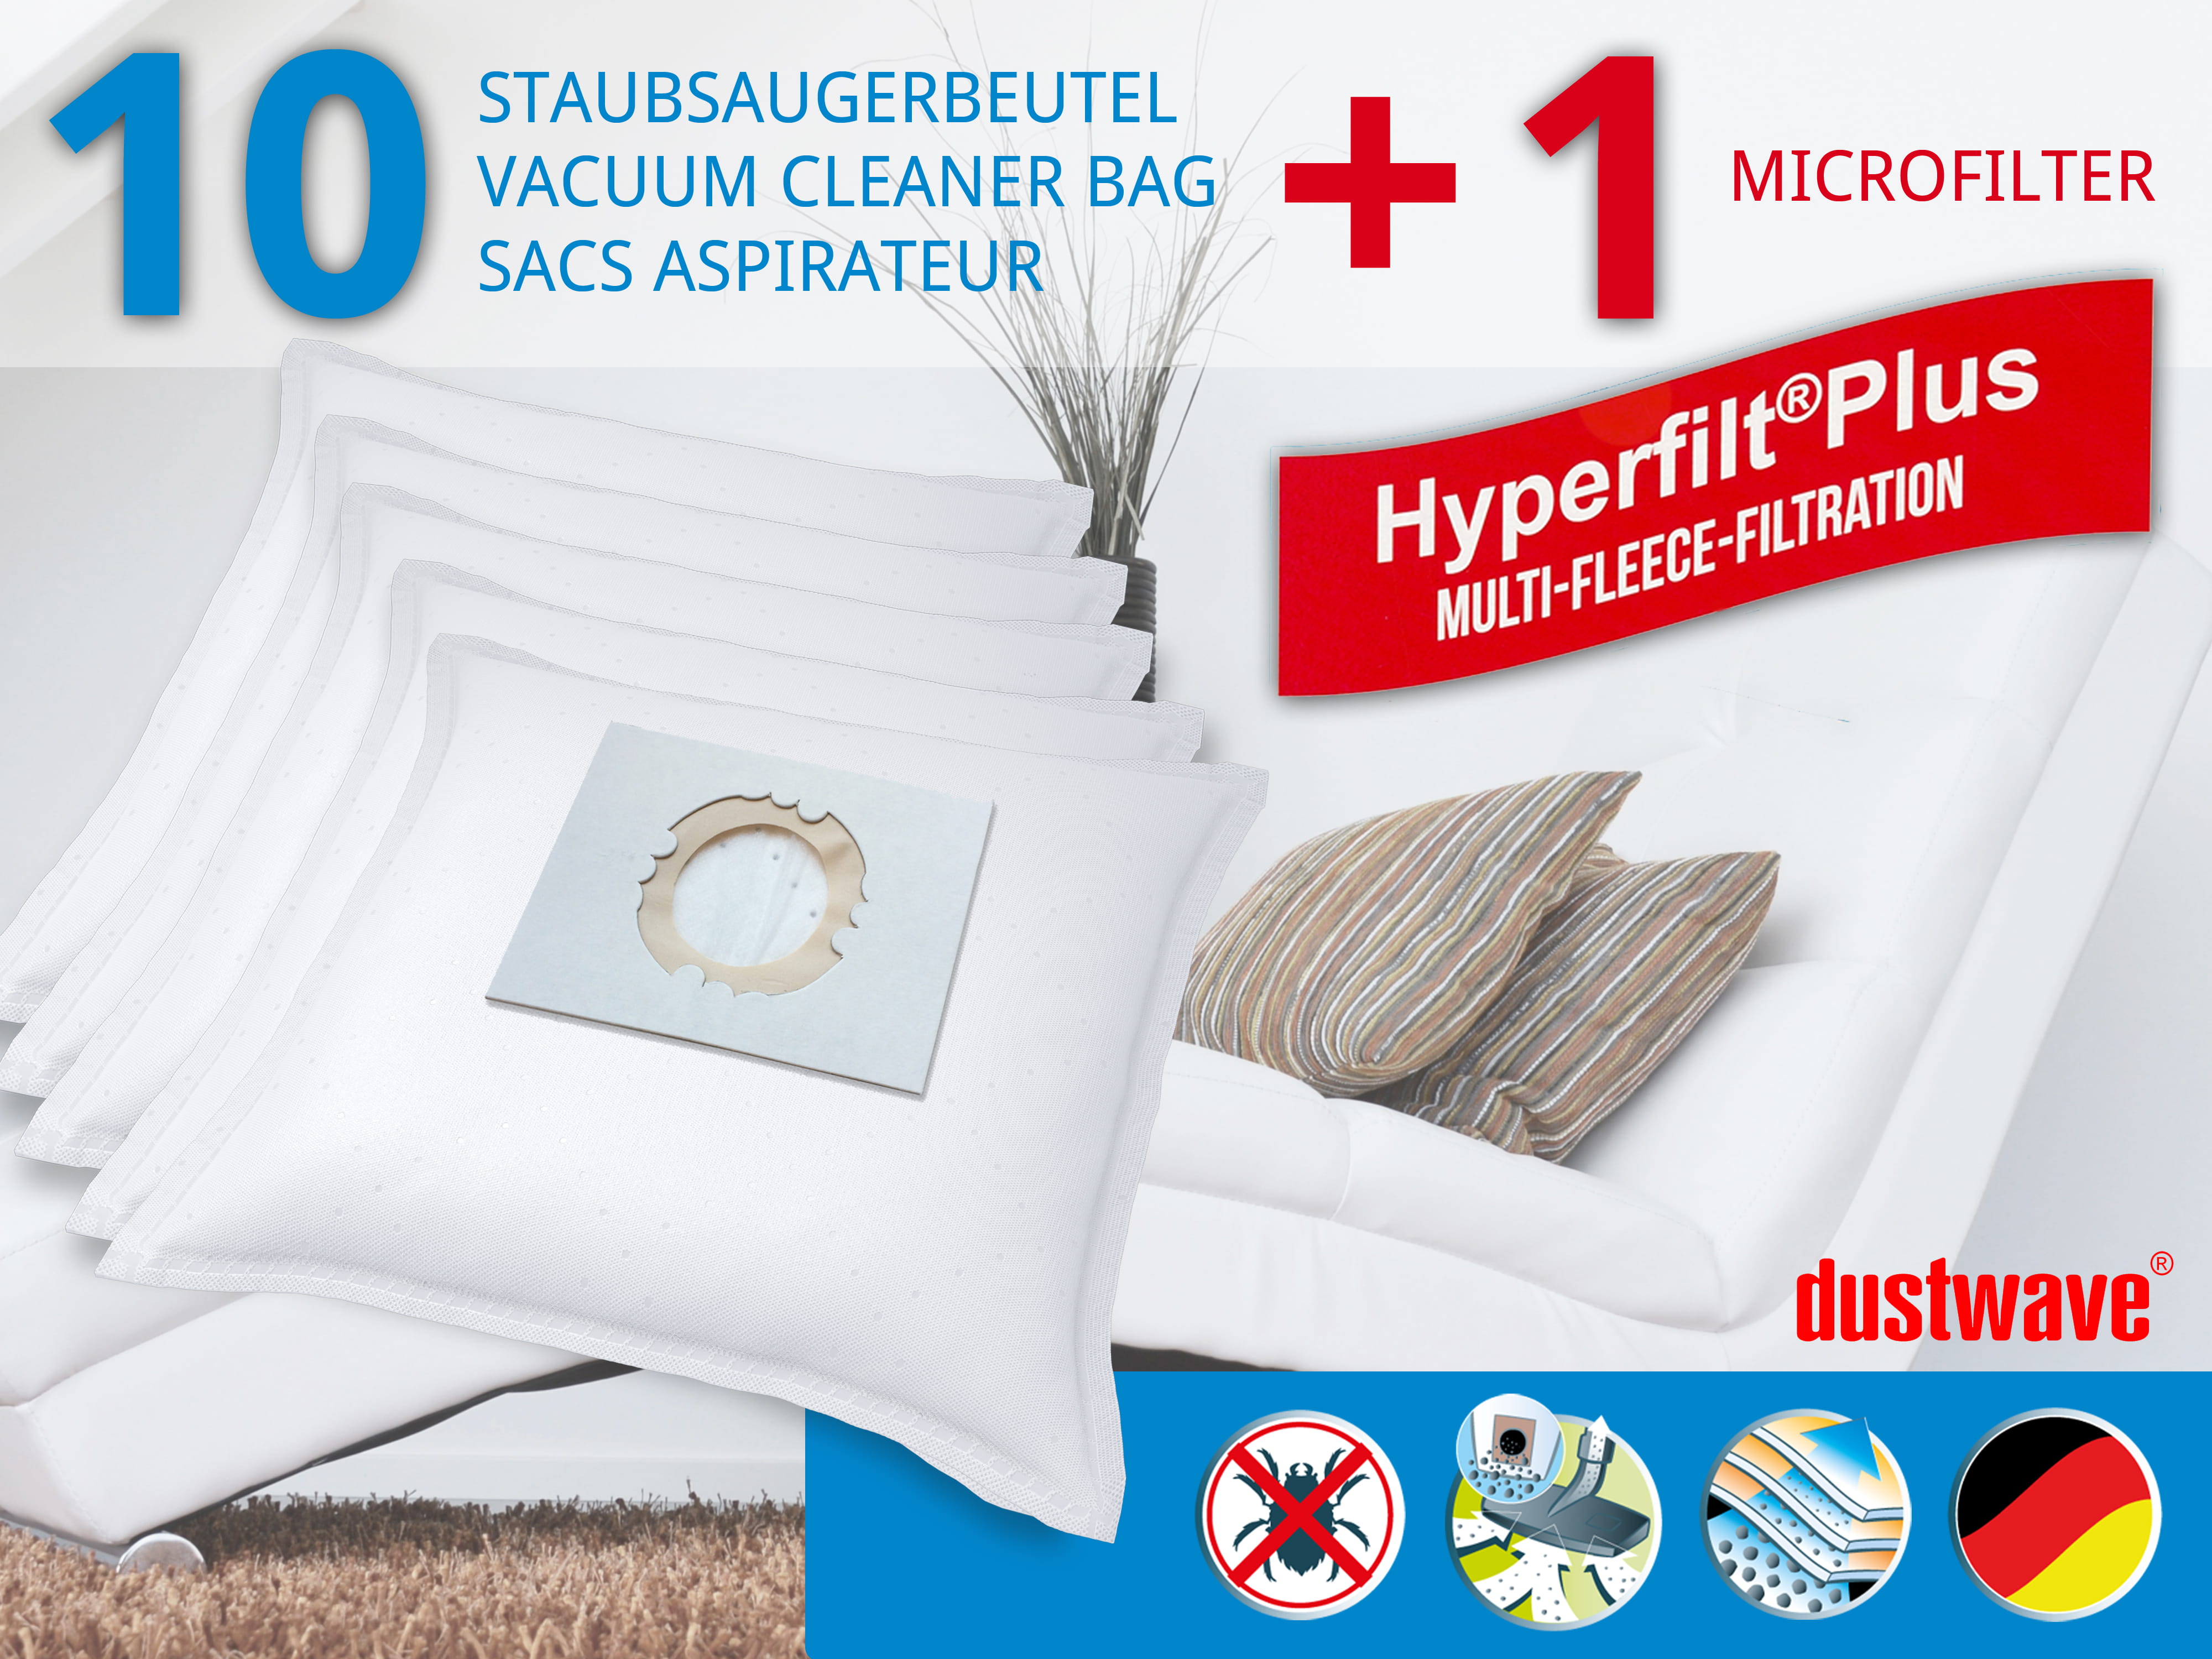 Dustwave® 10 Staubsaugerbeutel für Hoover SCST226F001 - hocheffizient, mehrlagiges Mikrovlies mit Hygieneverschluss - Made in Germany